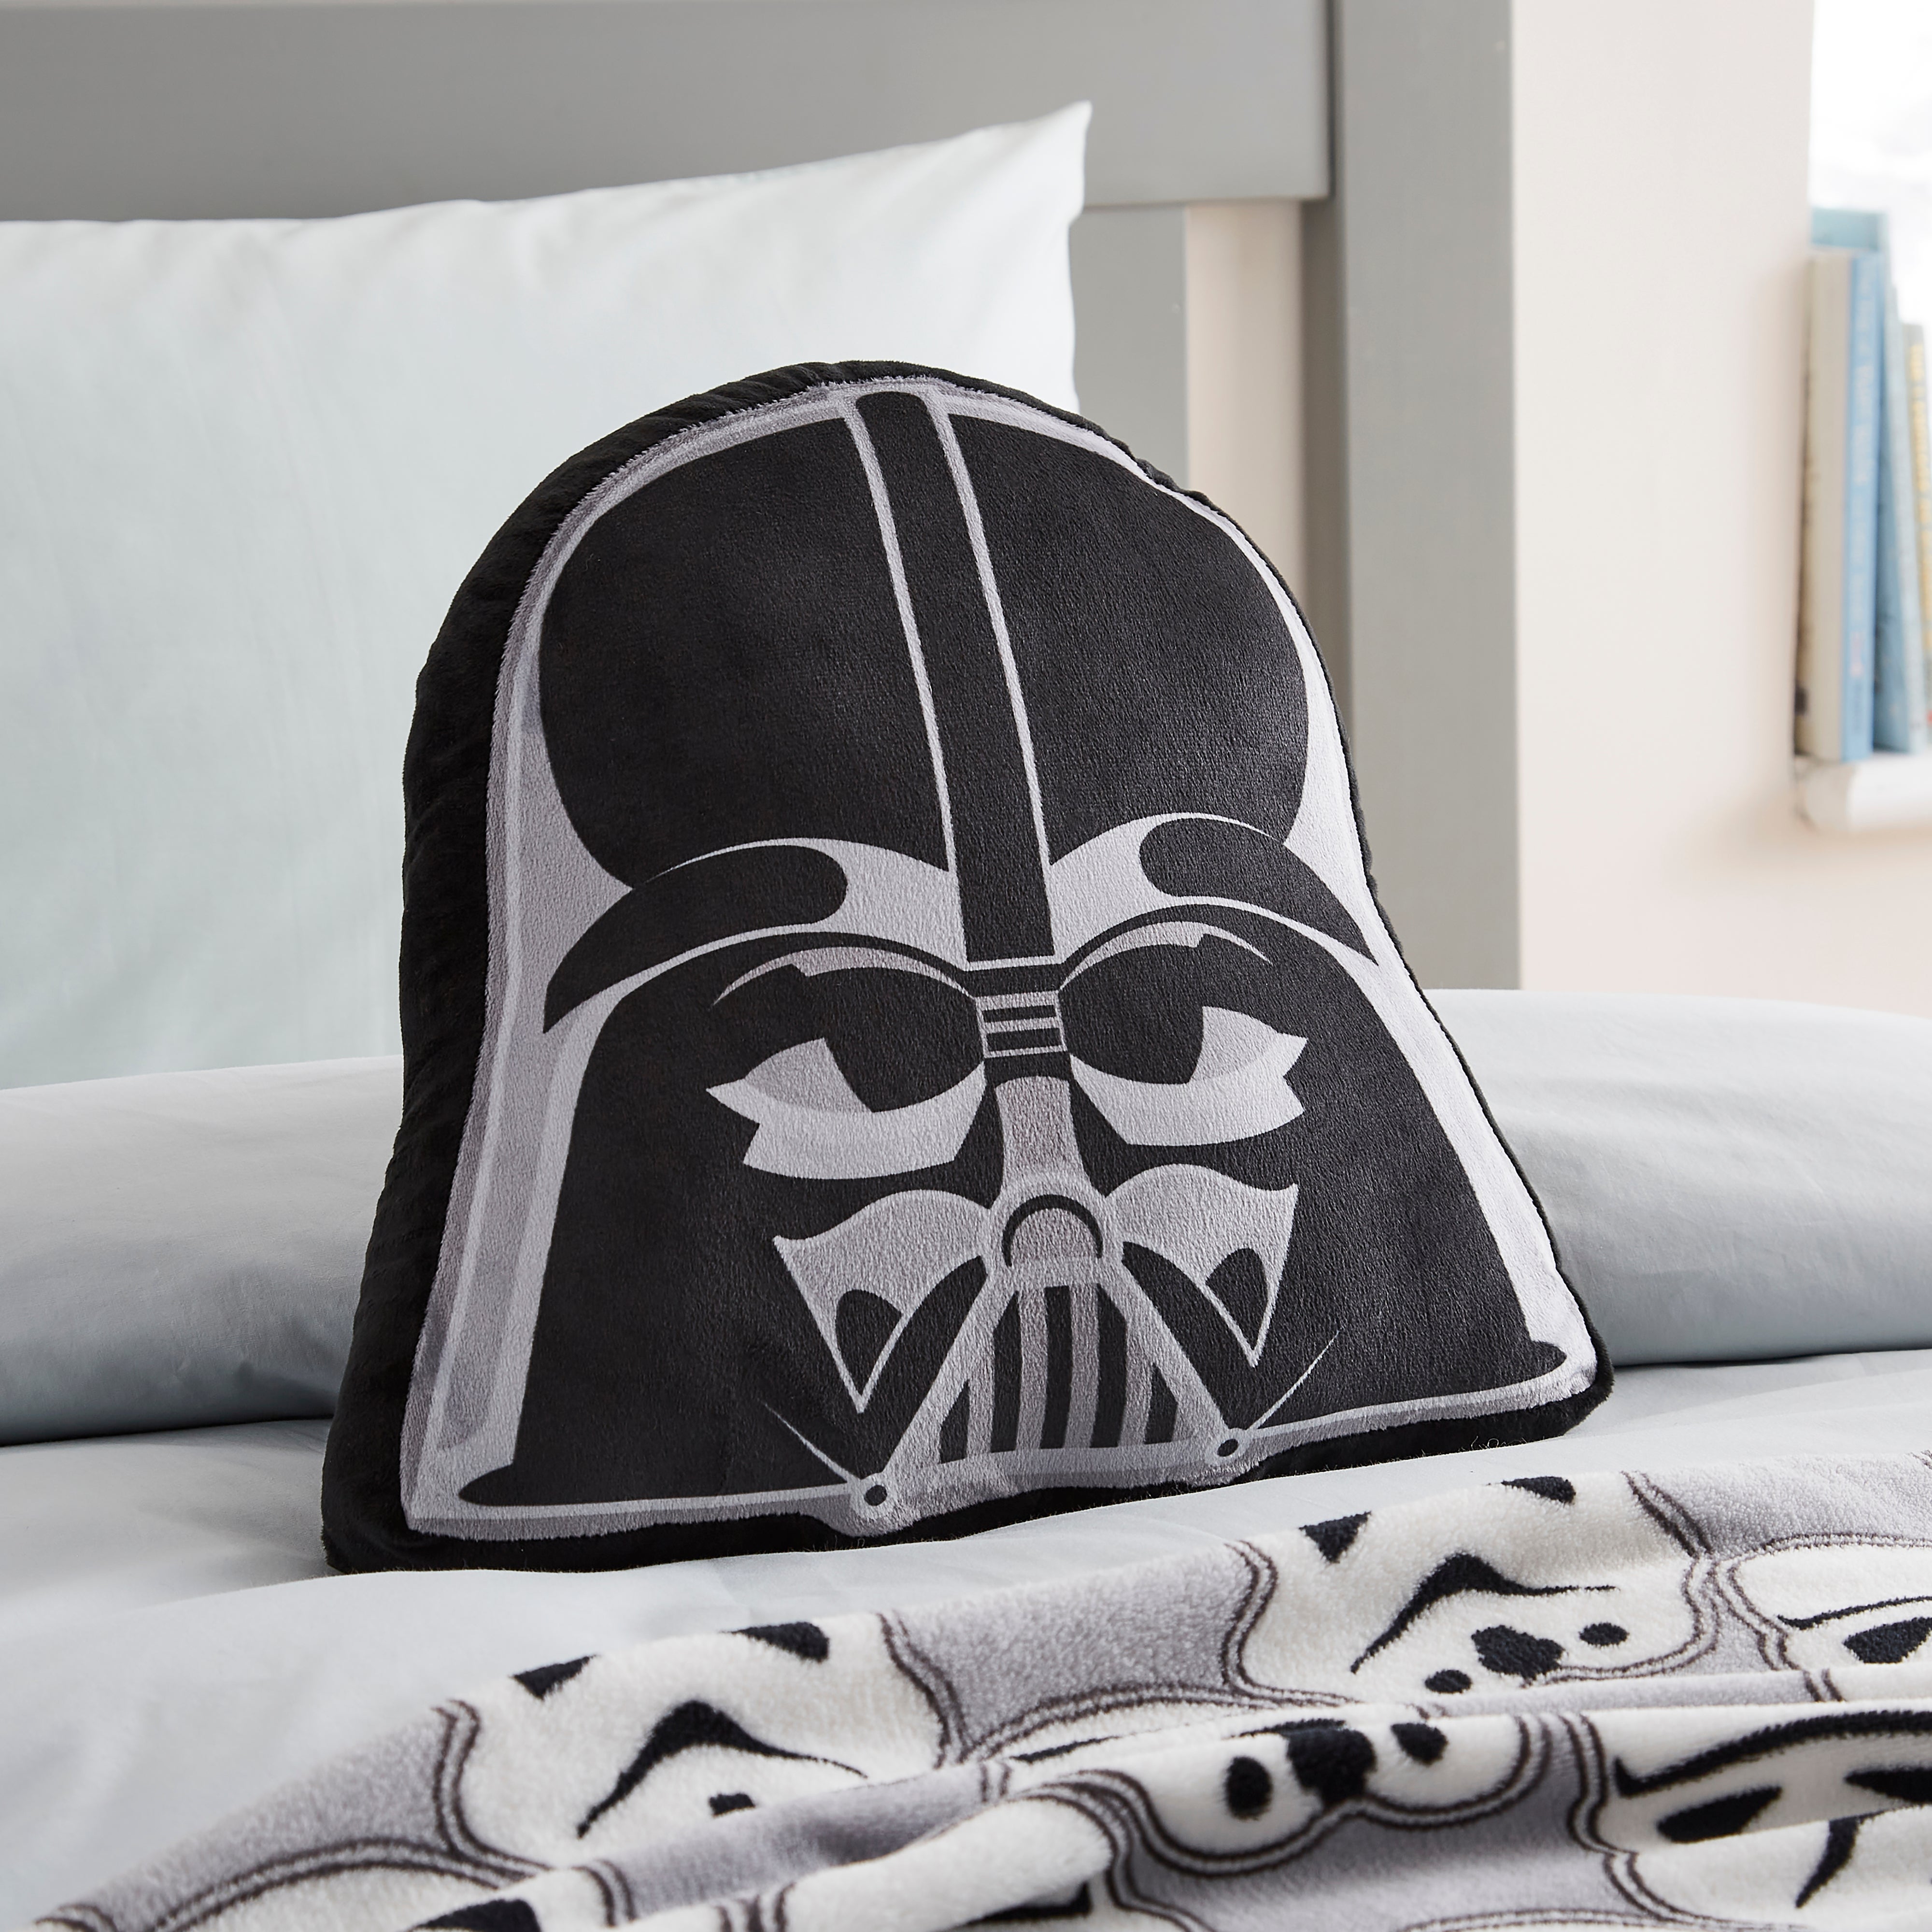 Star Wars Darth Vader Detailed Portrait Throw Pillow